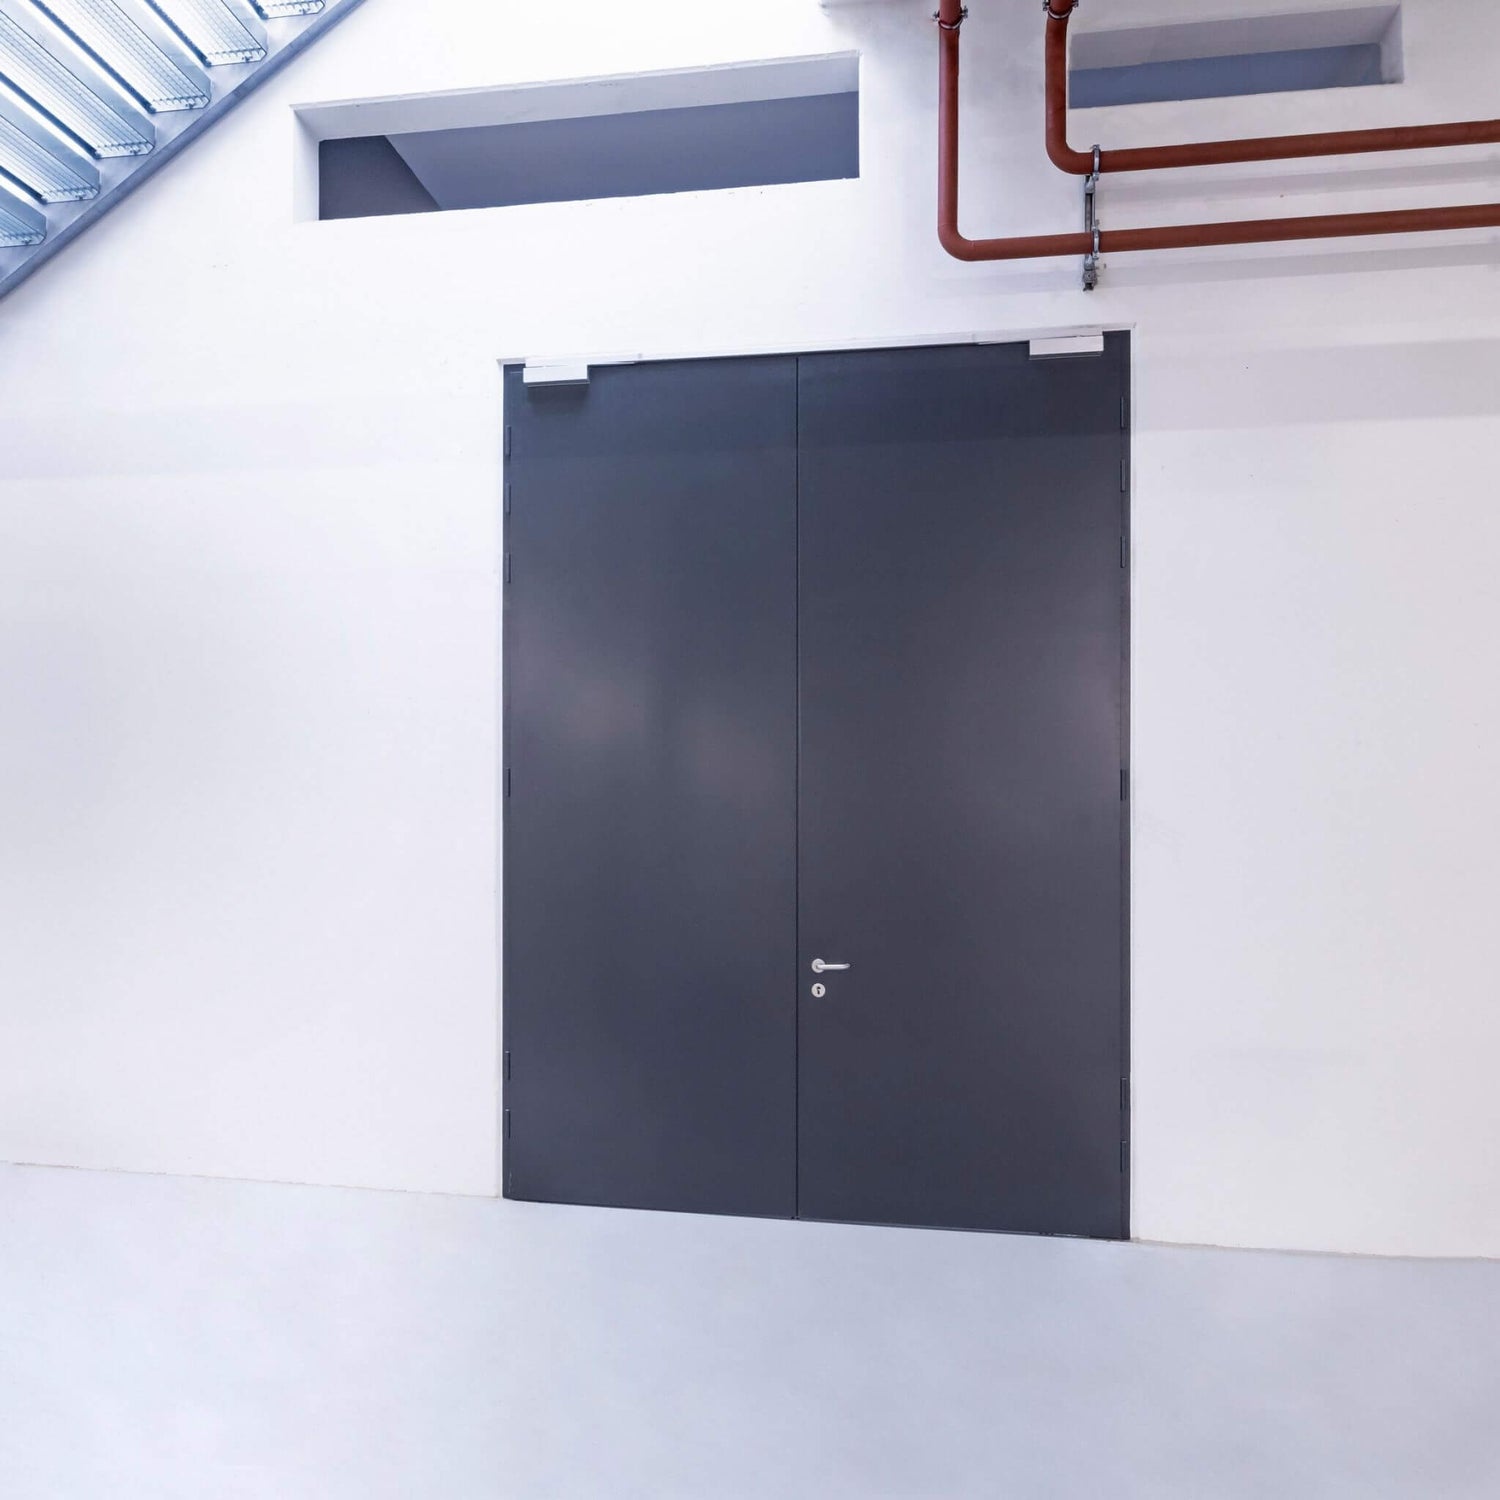 Große Stahltür - Drehflügeltor für Kellerräume oder Technikräume - Brandschutztür